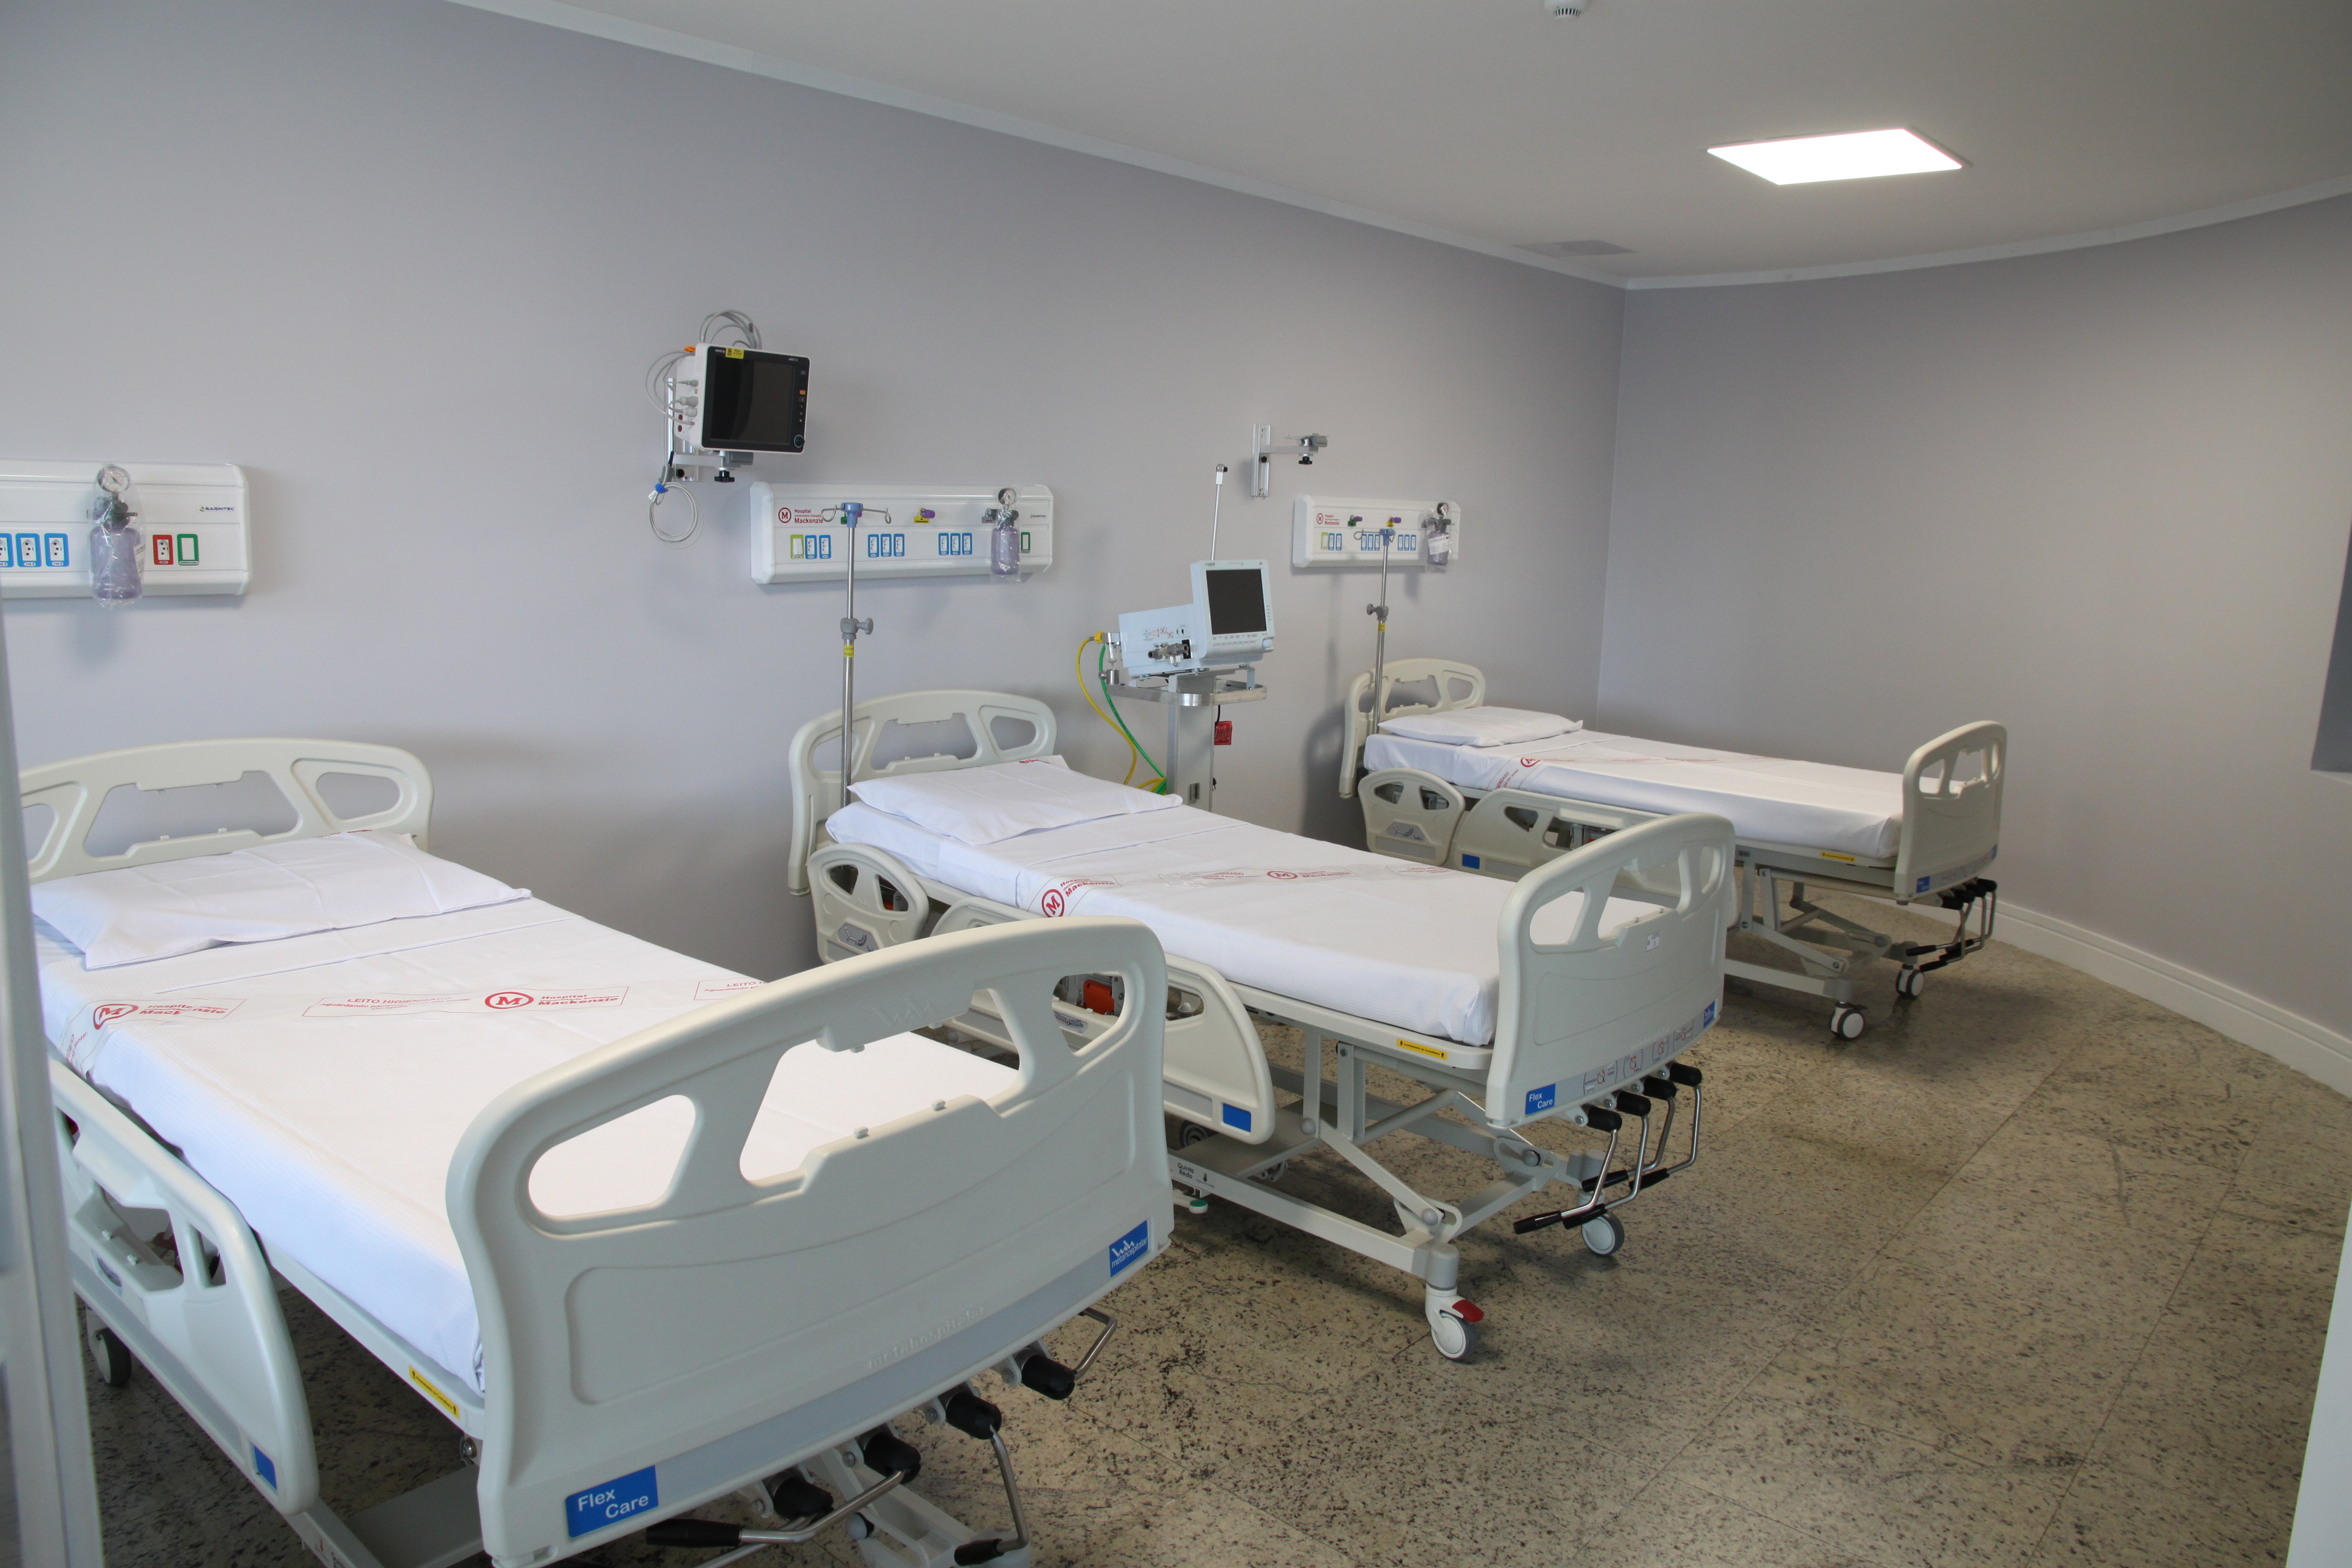 Hospital Evangélico inaugura unidade - Diário do Comércio